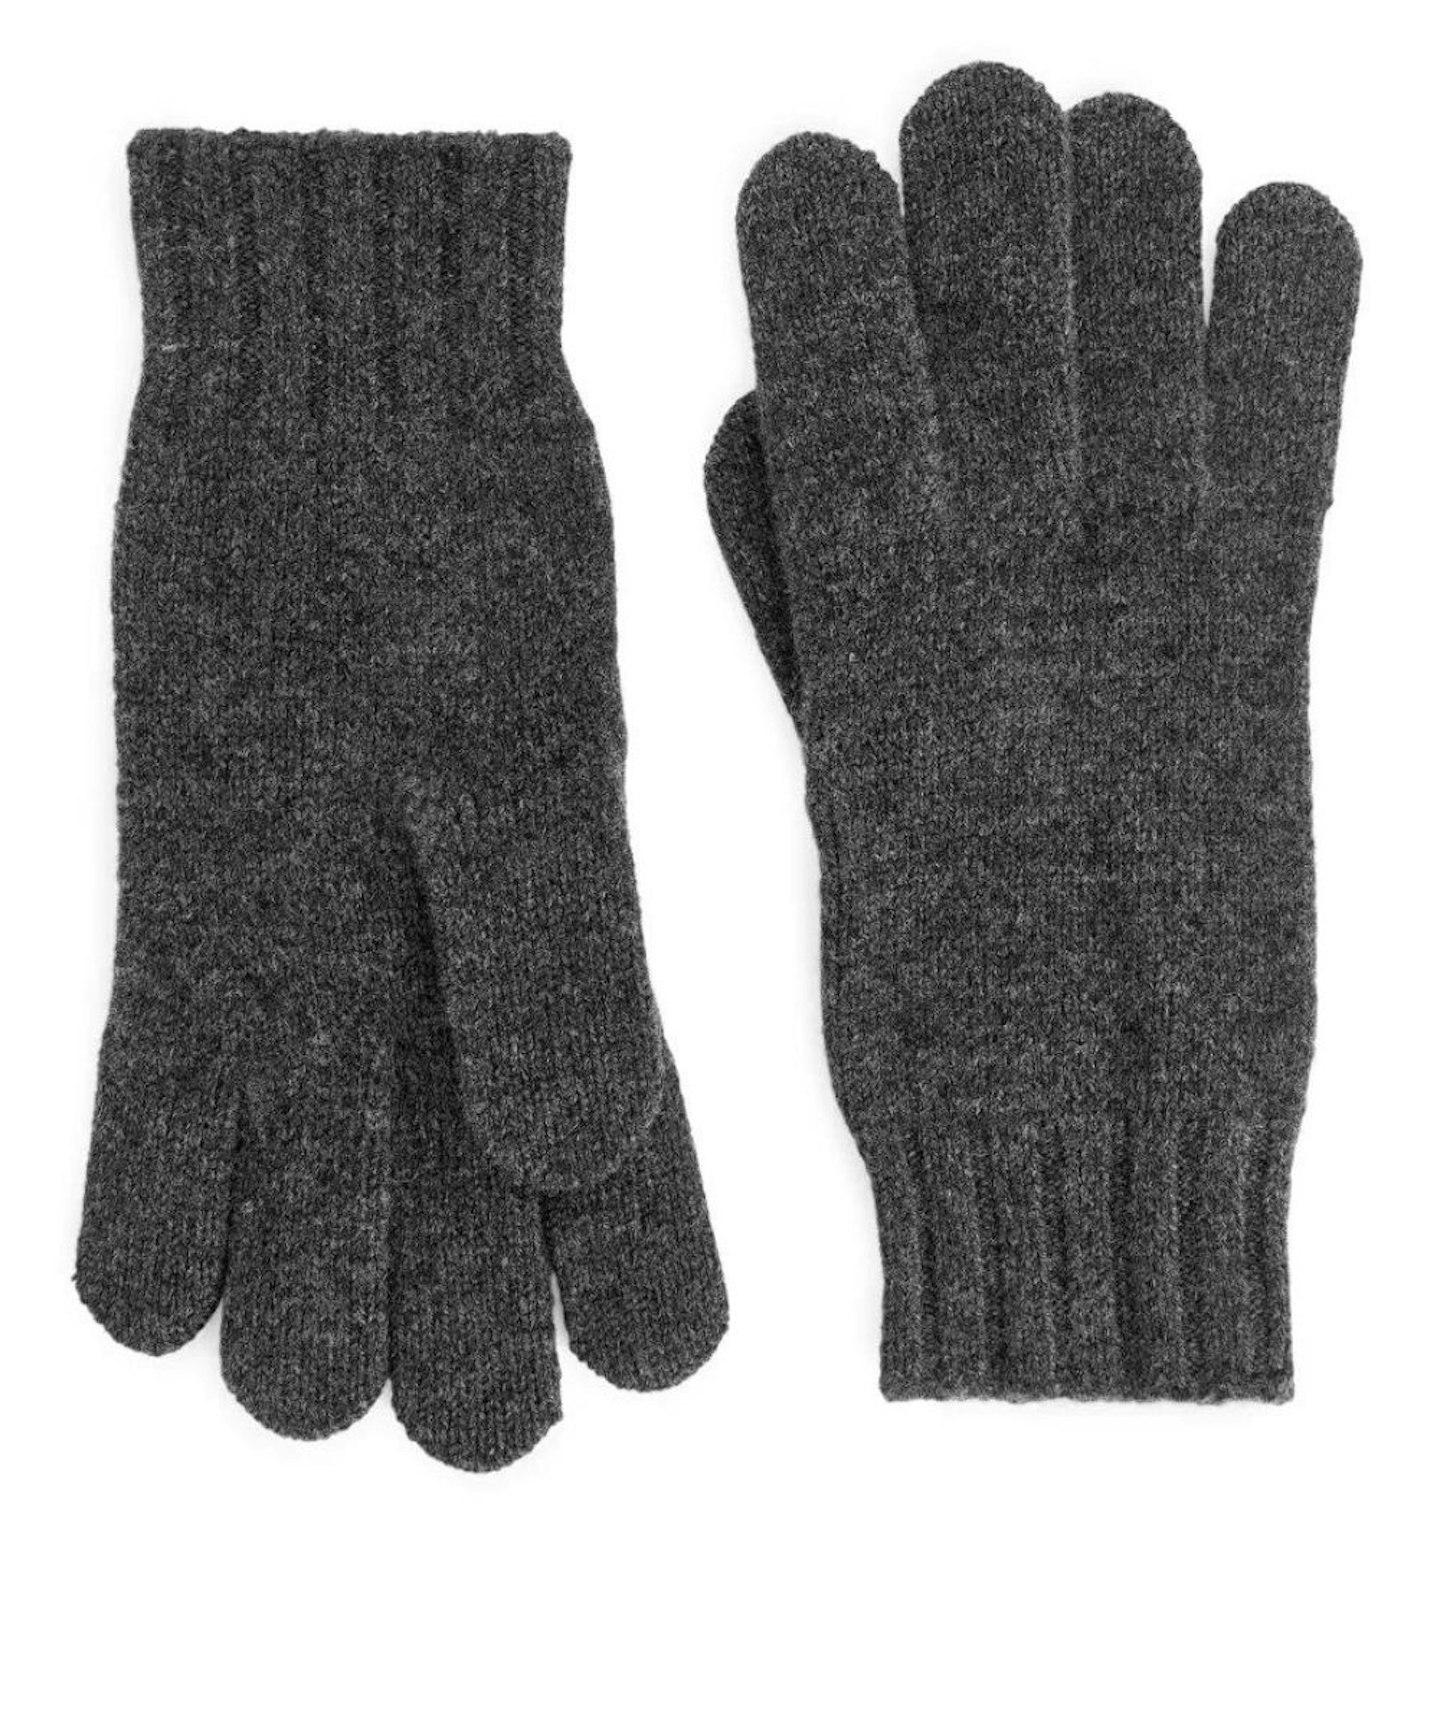 Merino Gloves, Arket